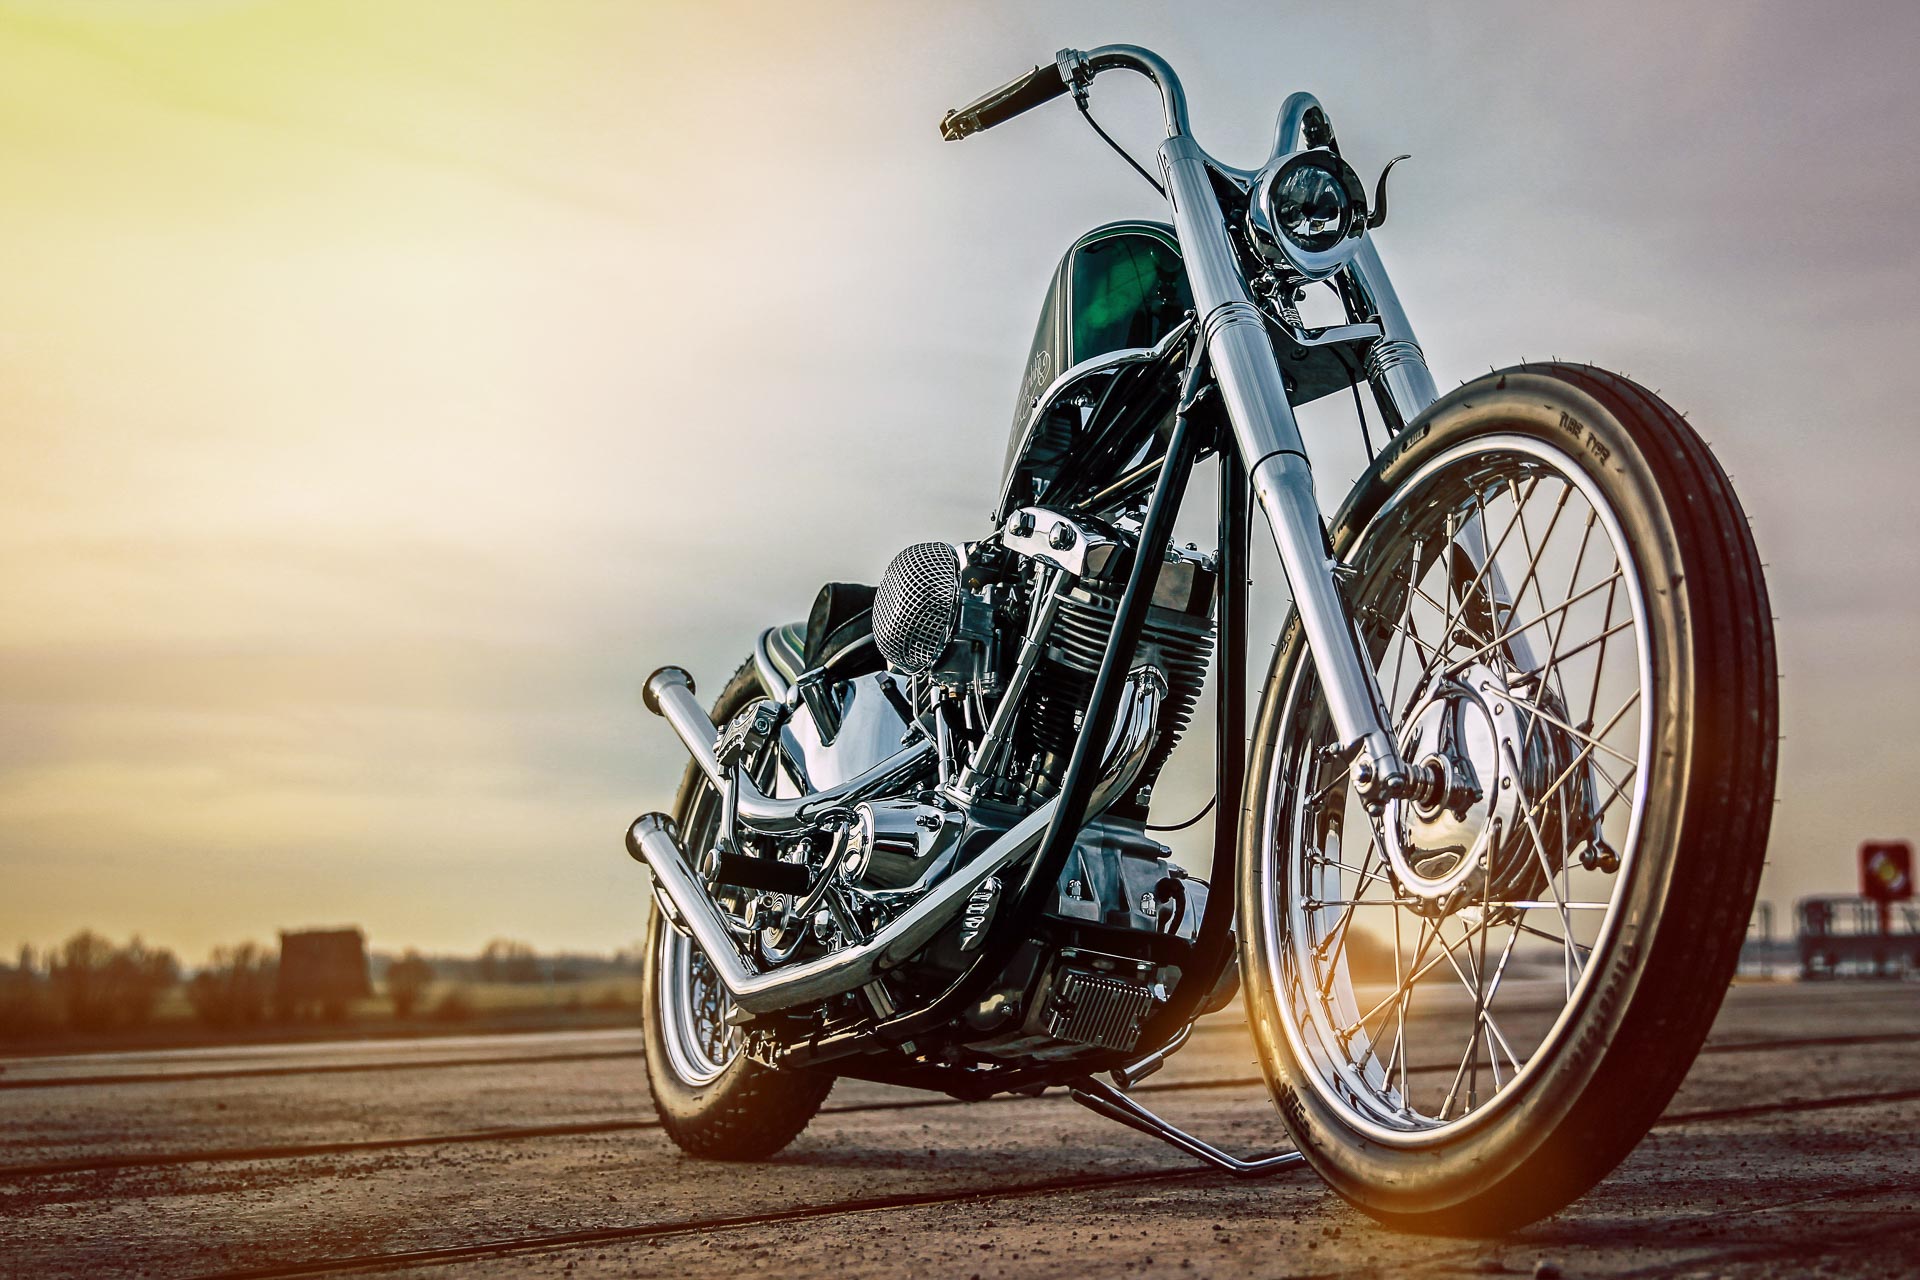 Customized Harley-Davidson motorcycles with Shovelhead engine by Thunderbike